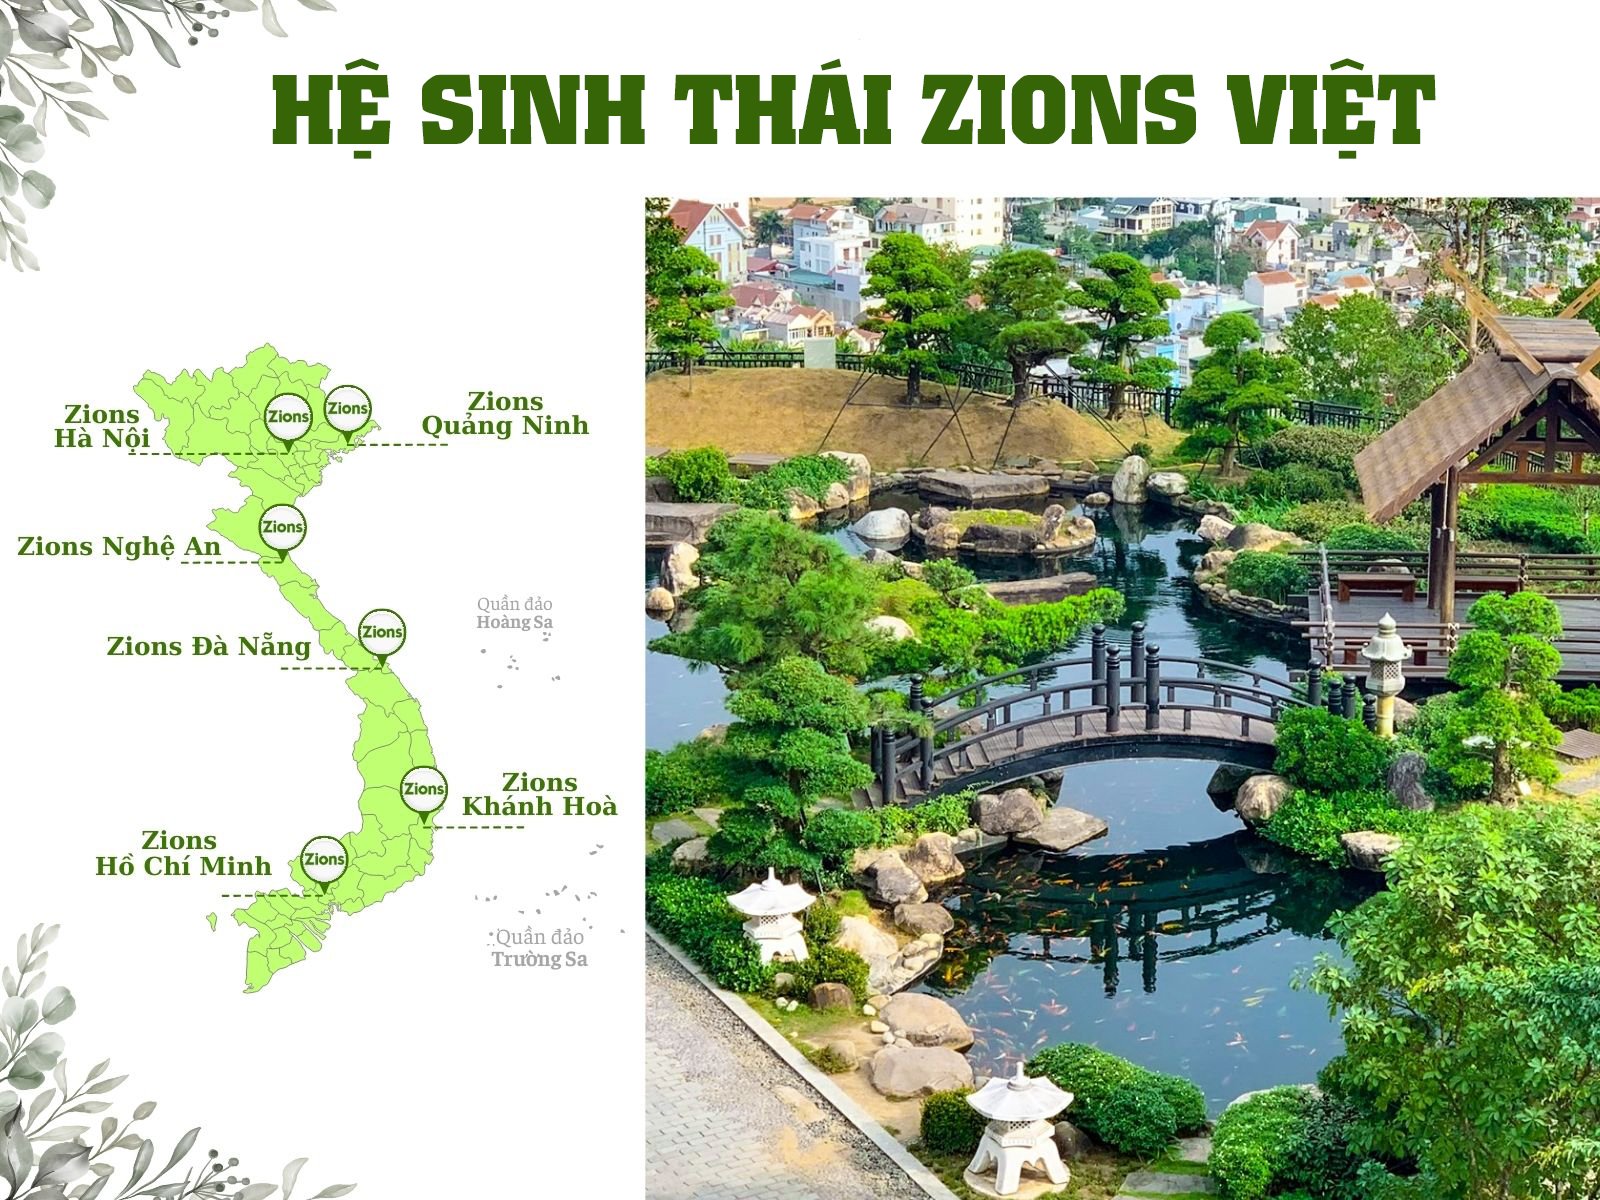 Hệ sinh thái Zions Việt với 6 cơ sở trải dài từ Bắc vào Nam